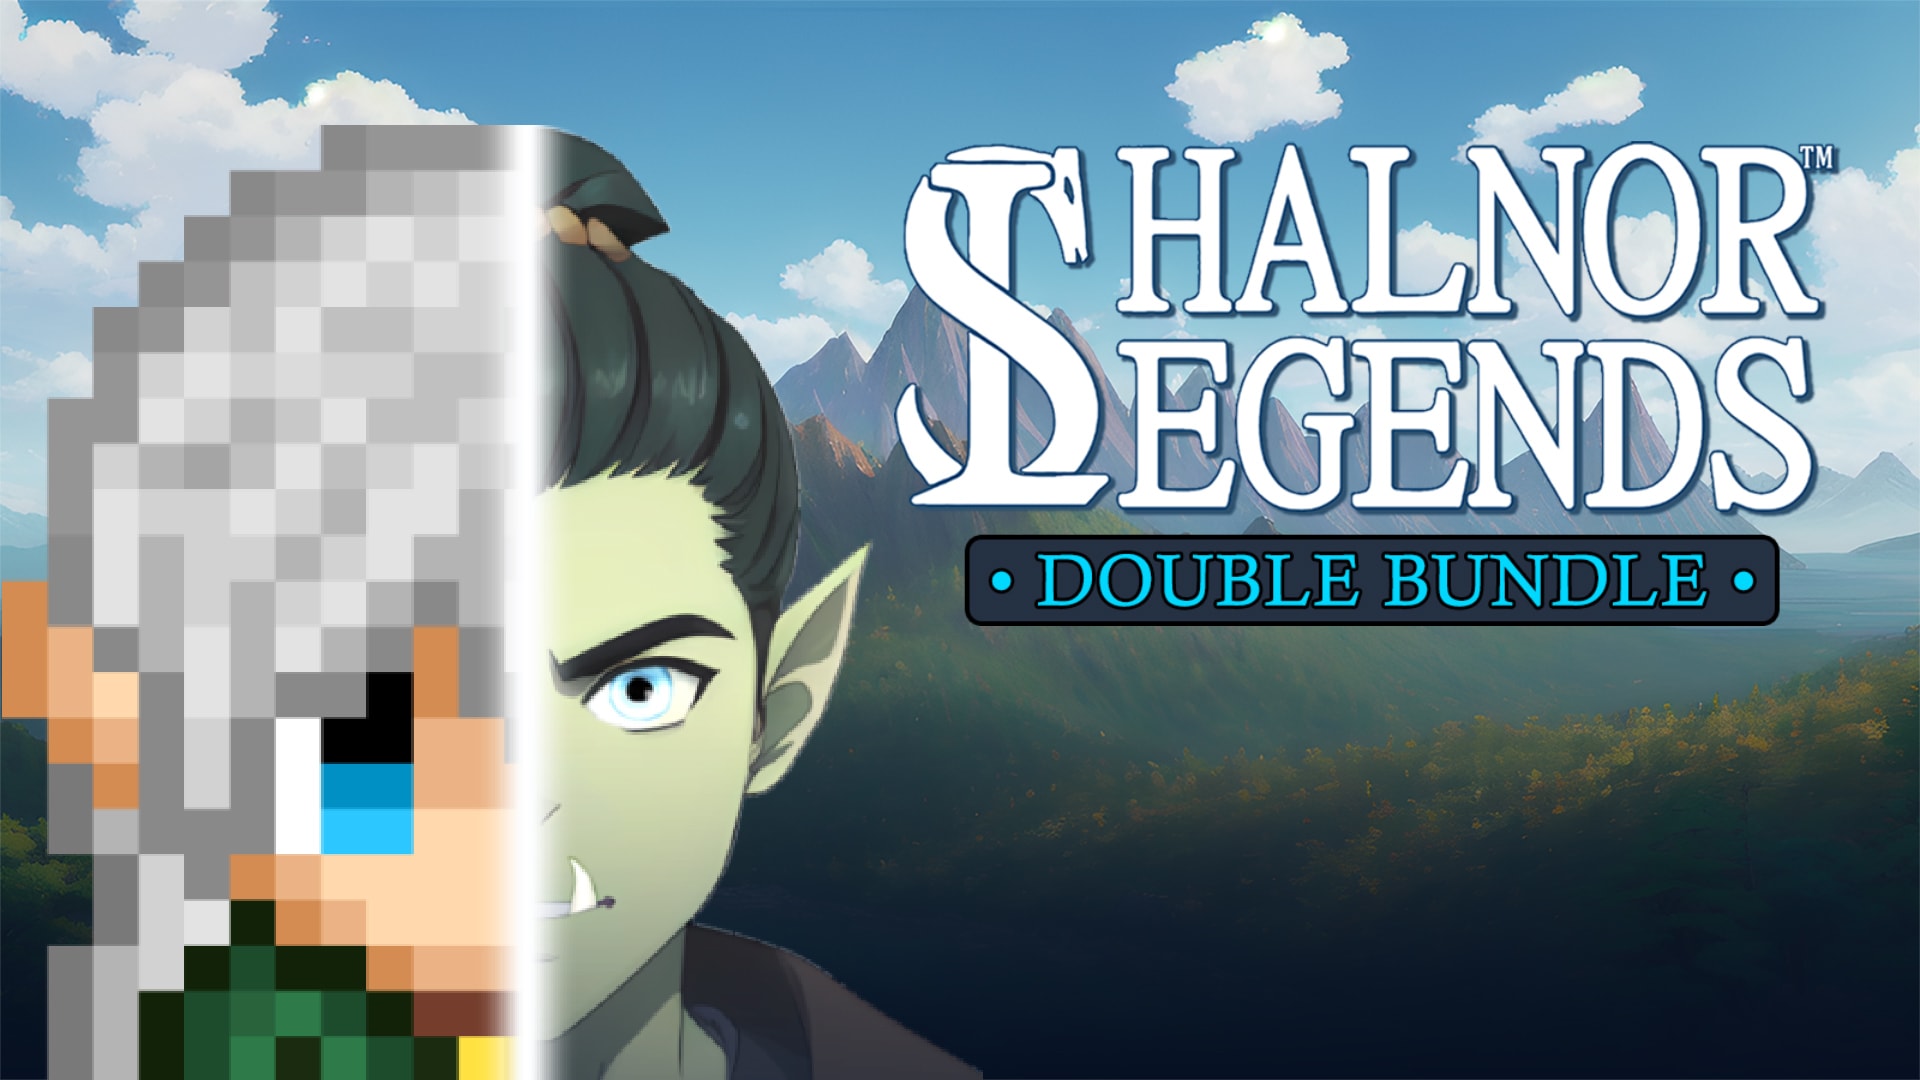 Shalnor Legends & Sequel Bundle